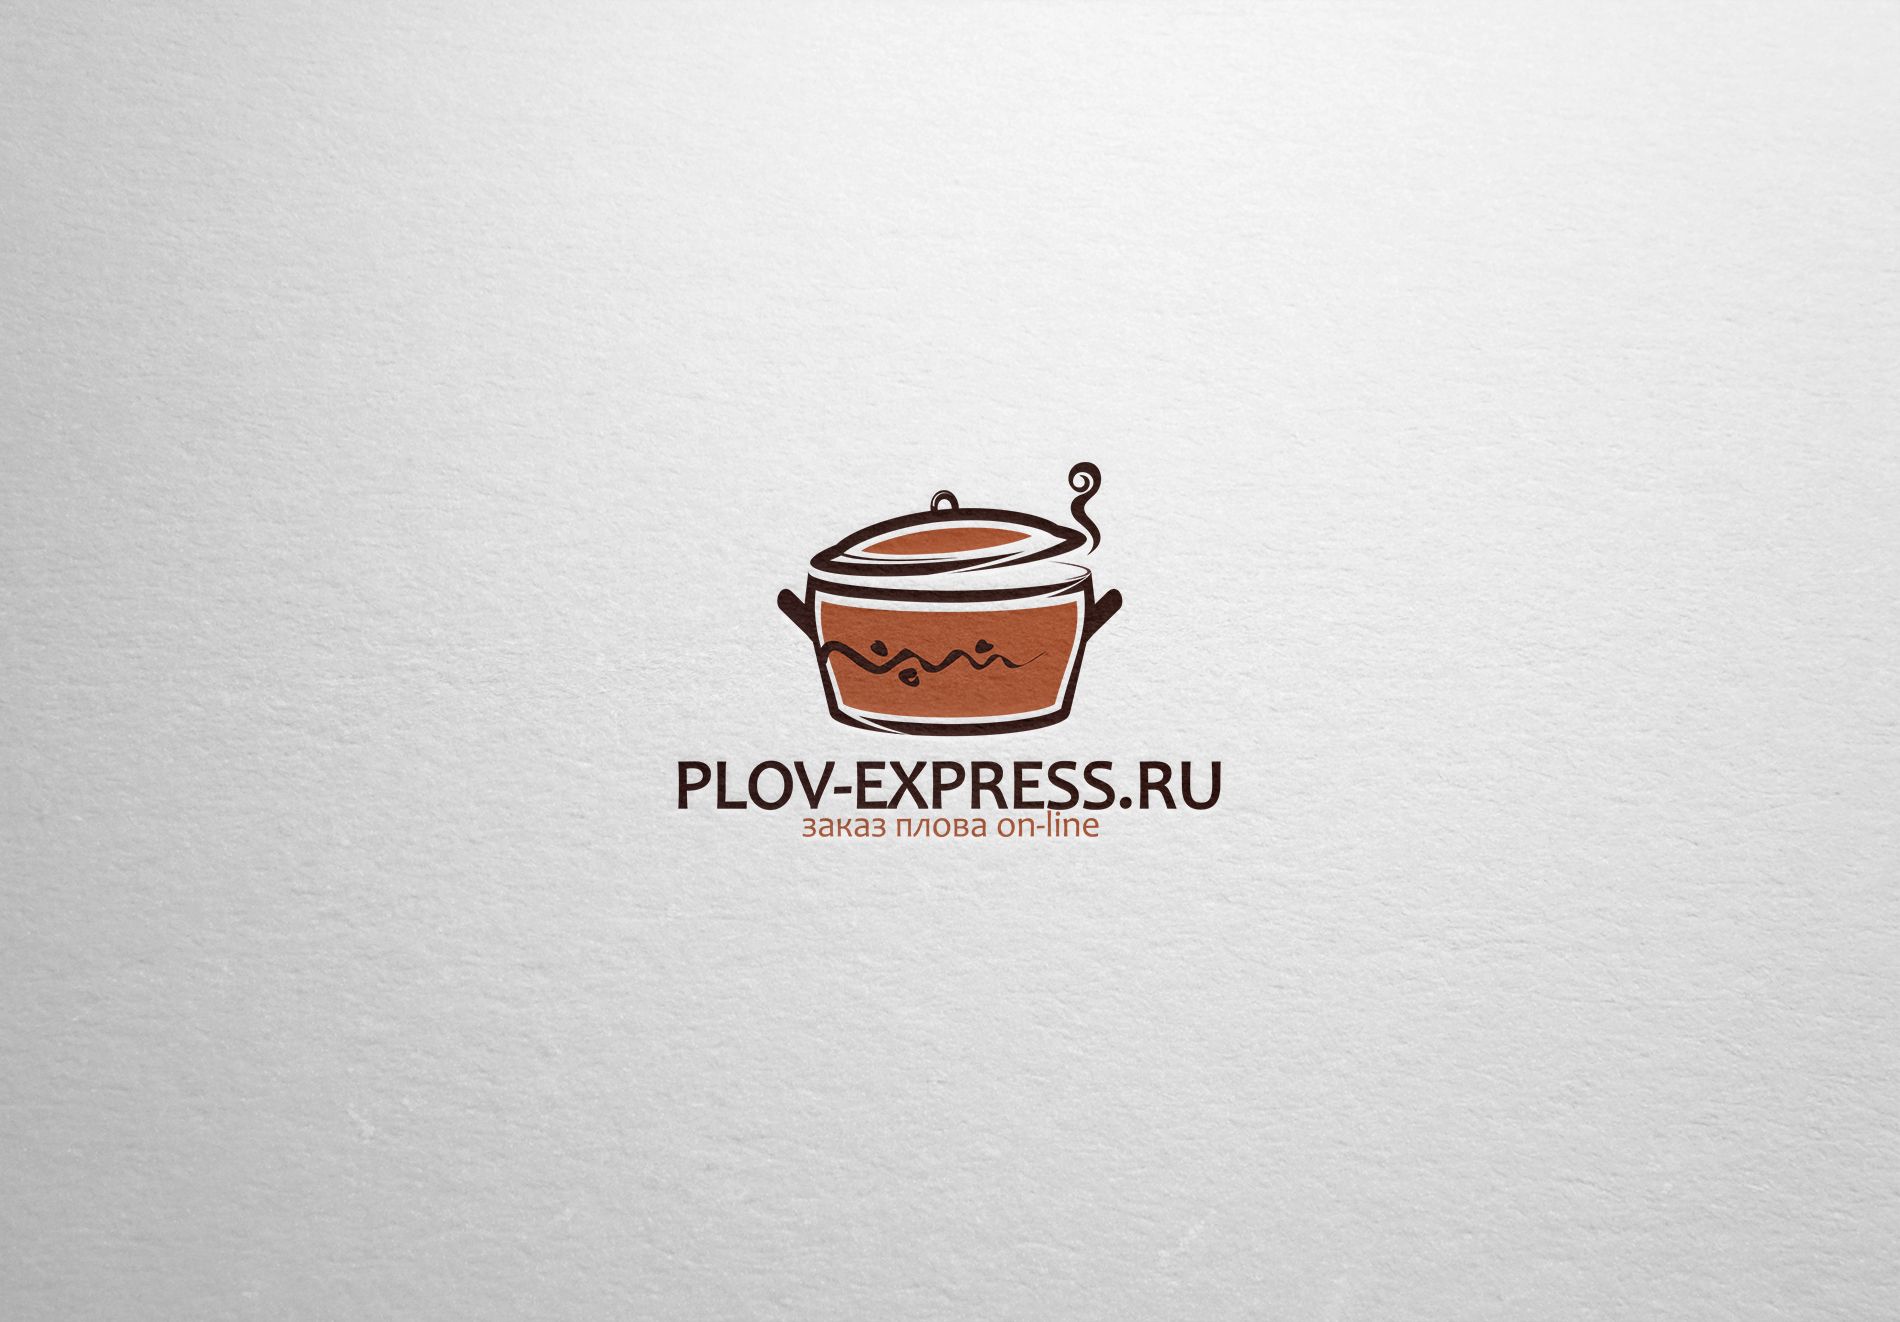 Лого и фирмстиль для сайта plov-express.ru - дизайнер La_persona